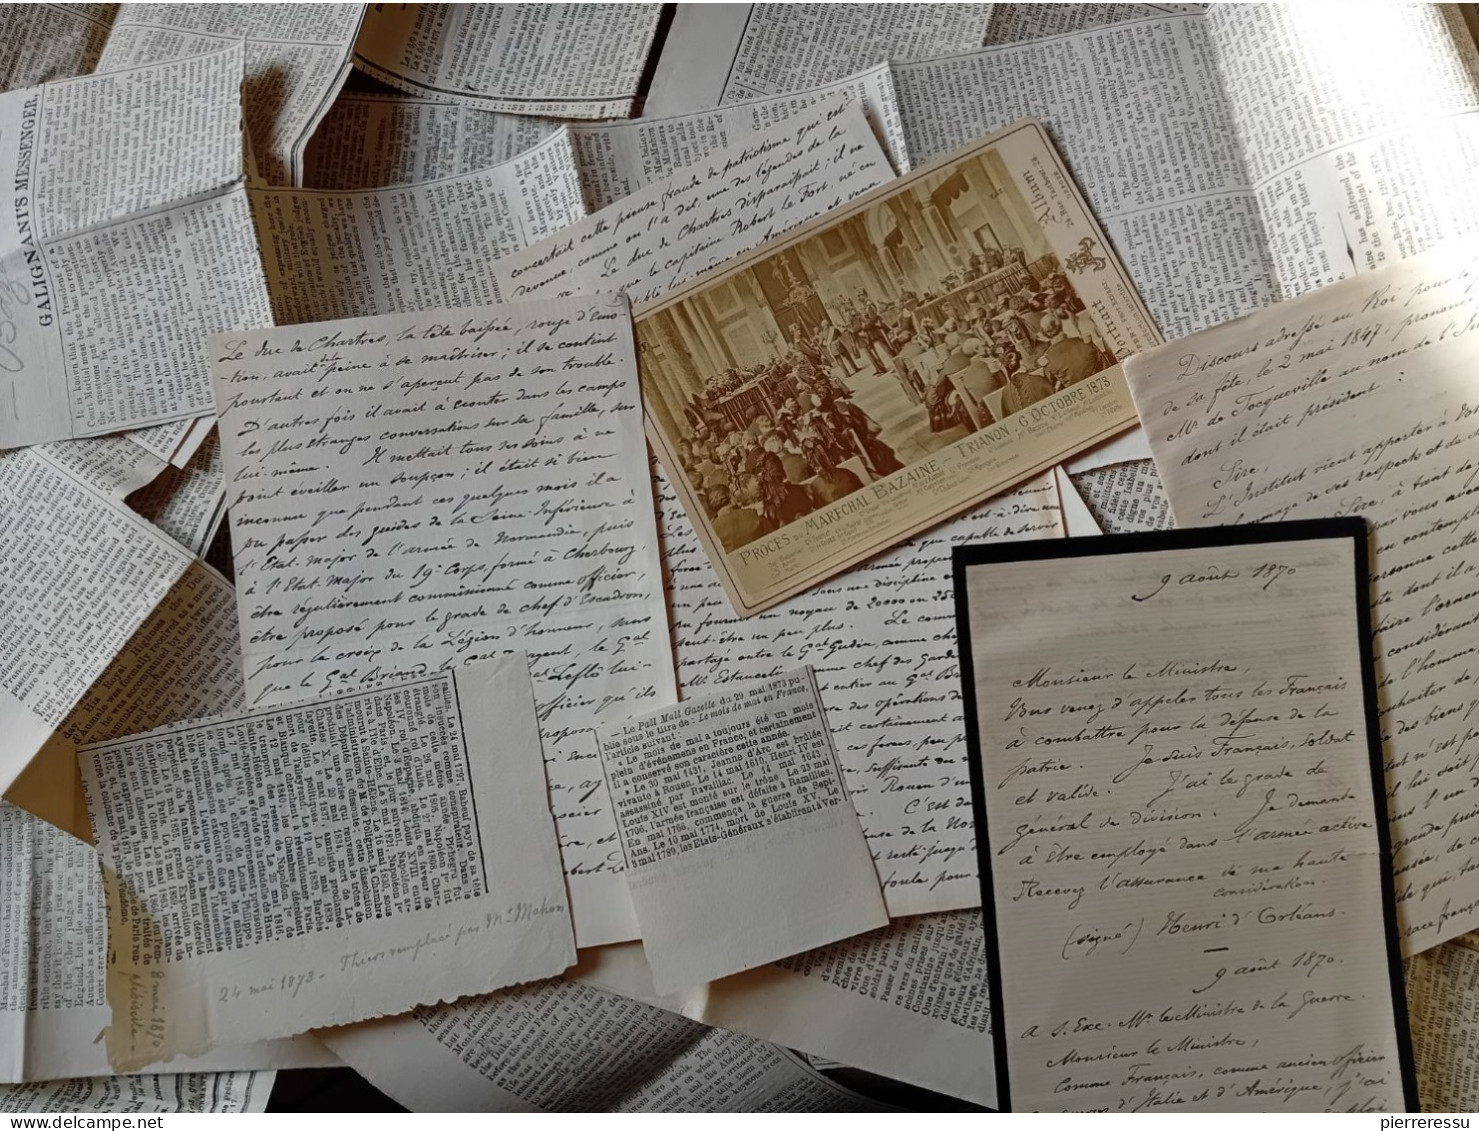 PHOTO APPERT A PARIS PROCES MARECHAL BAZAINE MANUSCRITS DUC D AUMALE ? DIVERSES COUPURES DE JOURNAUX TRIANON 1873 - Historische Documenten